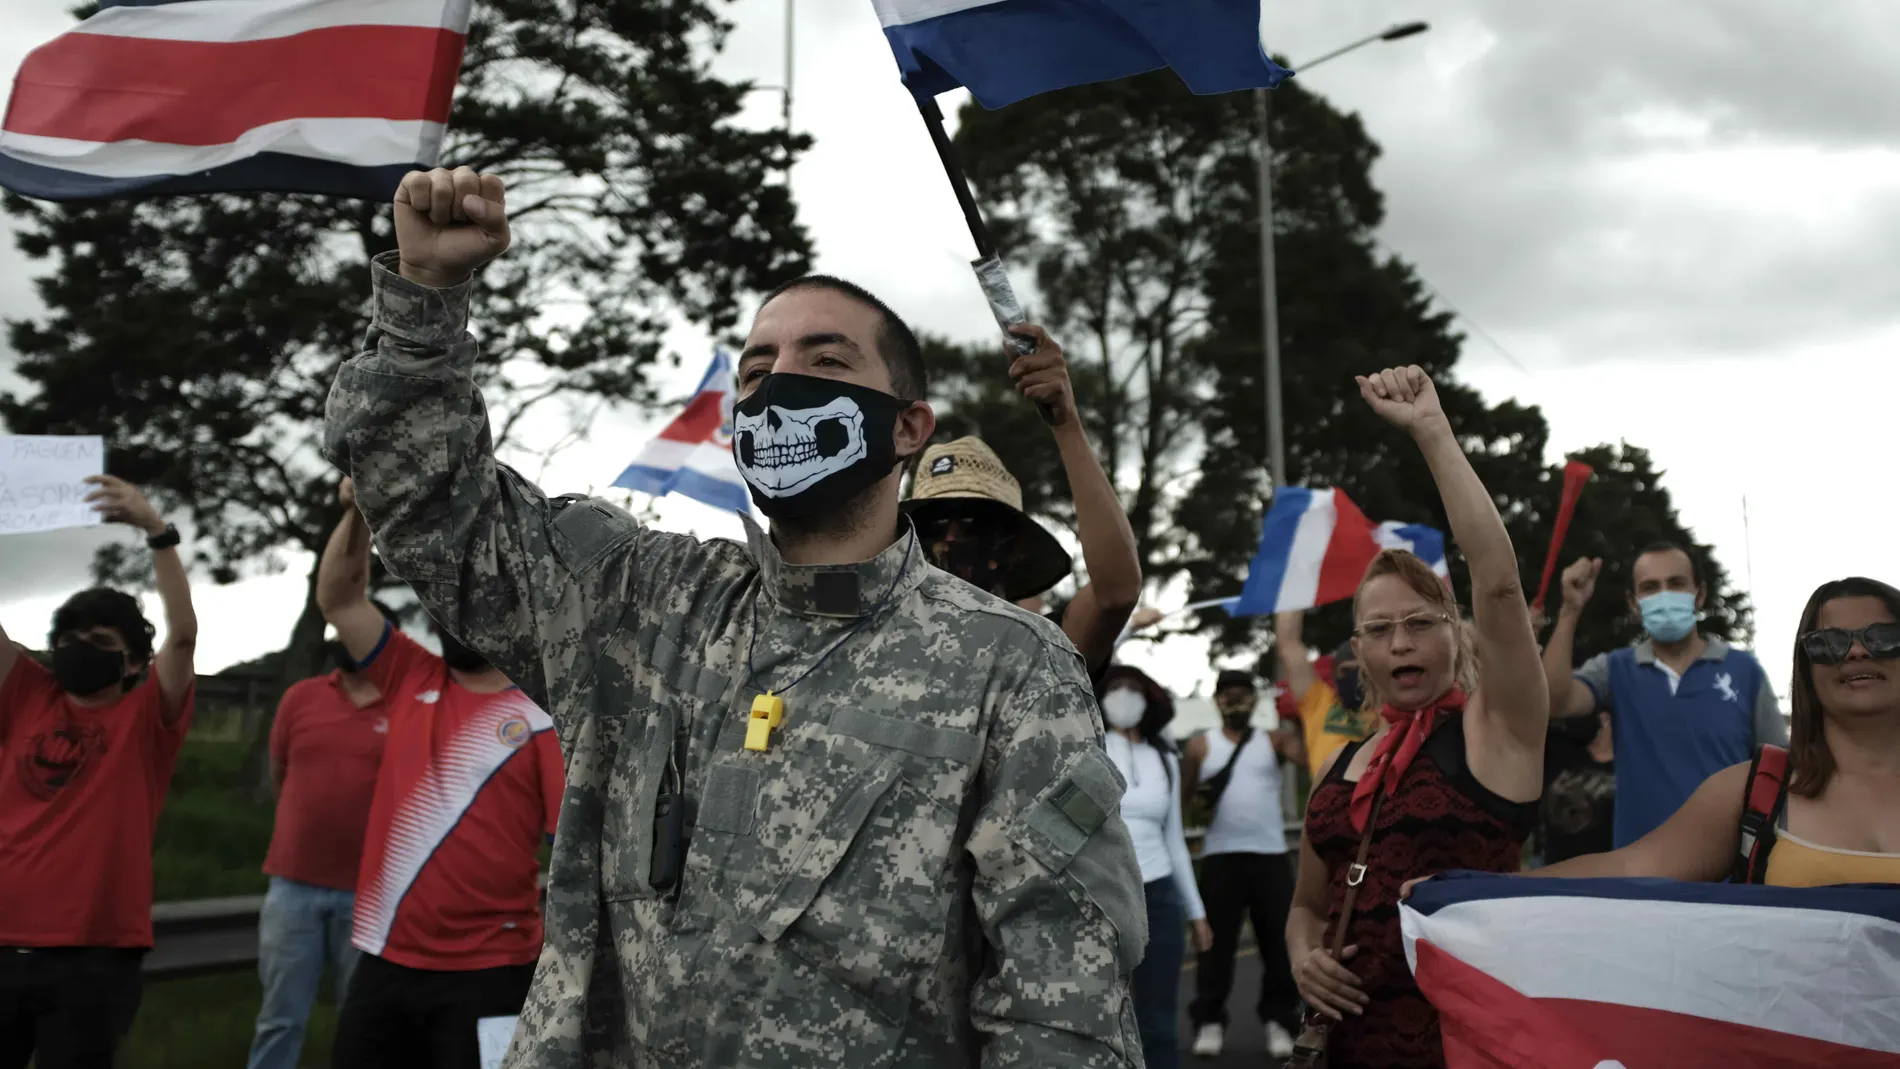 AME9224. SAN JOSÉ (COSTA RICA), 04/10/2020.- Personas bloquean una carretera, este domingo, durante una protesta en San José (Costa Rica). Los actos de violencia y los enfrentamientos entre la policía y los manifestantes se han incrementado en las últimas horas en Costa Rica, en el marco de las protestas de grupos sociales contra una posible negociación del Gobierno con el Fondo Monetario Internacional (FMI) por 1.750 millones de dólares, que traería consigo una subida de impuestos. EFE/Jeffrey Arguedas